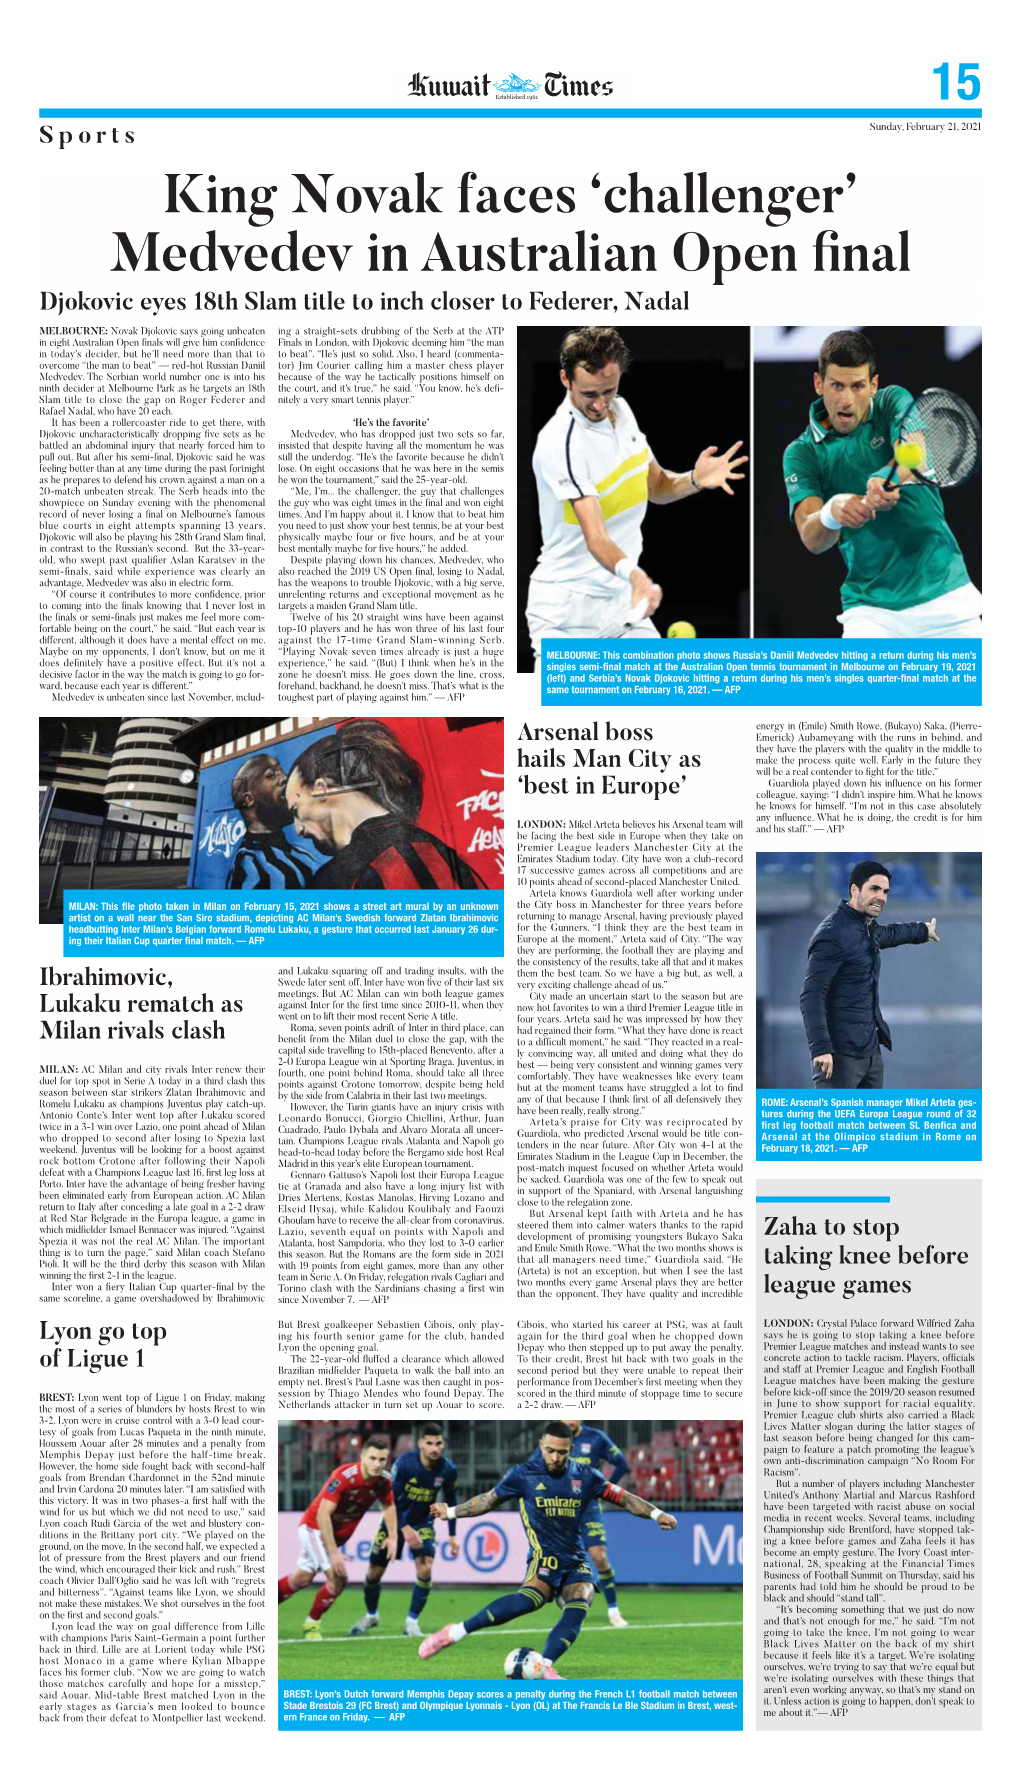 King Novak Faces 'Challenger' Medvedev in Australian Open Final